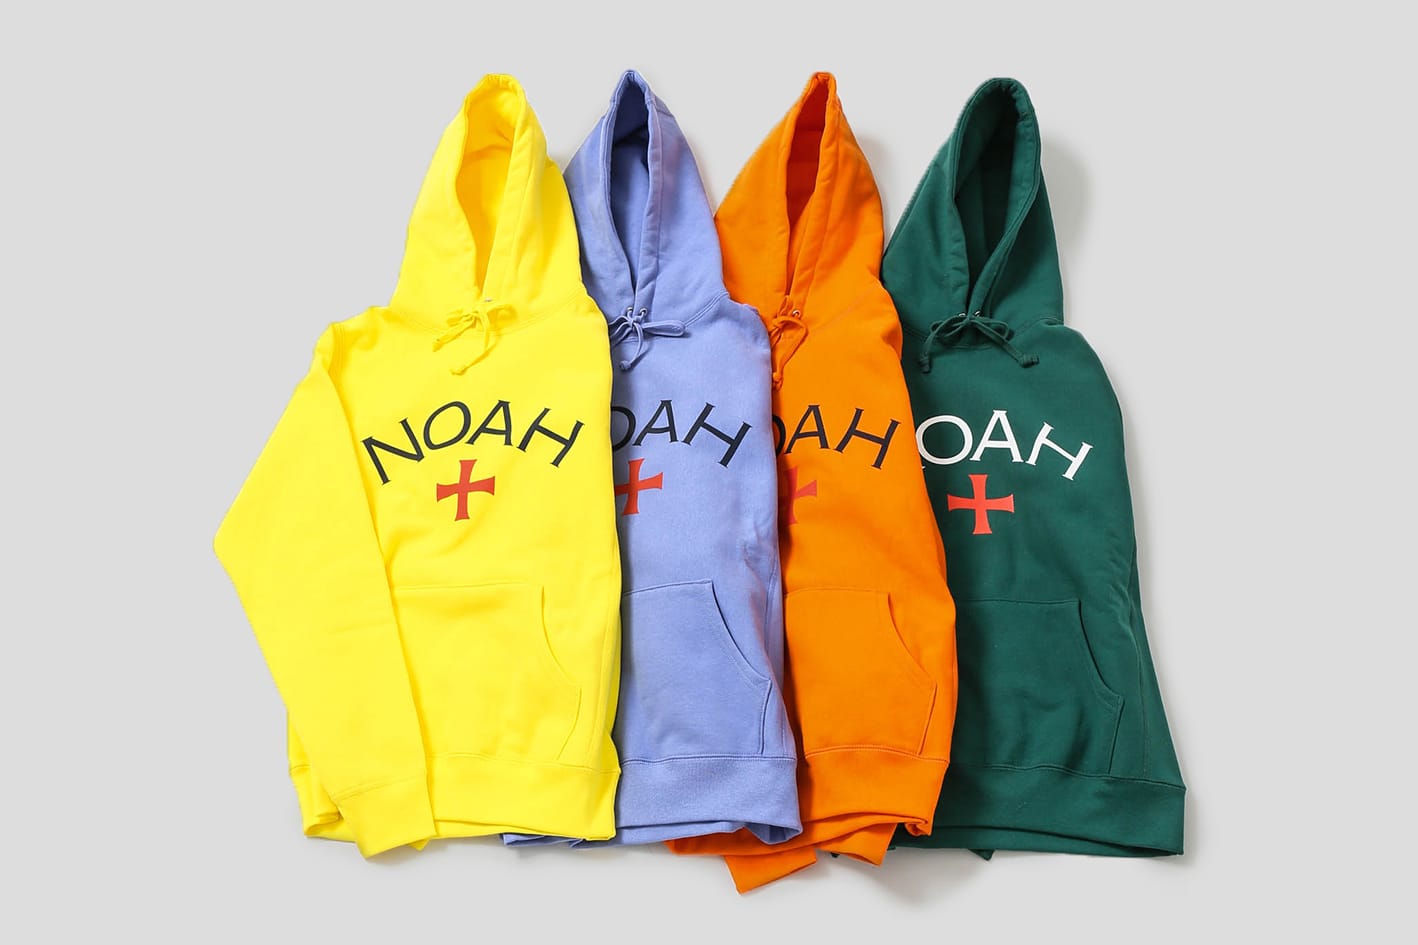 (M) NOAH NY Core Logo Hoodie